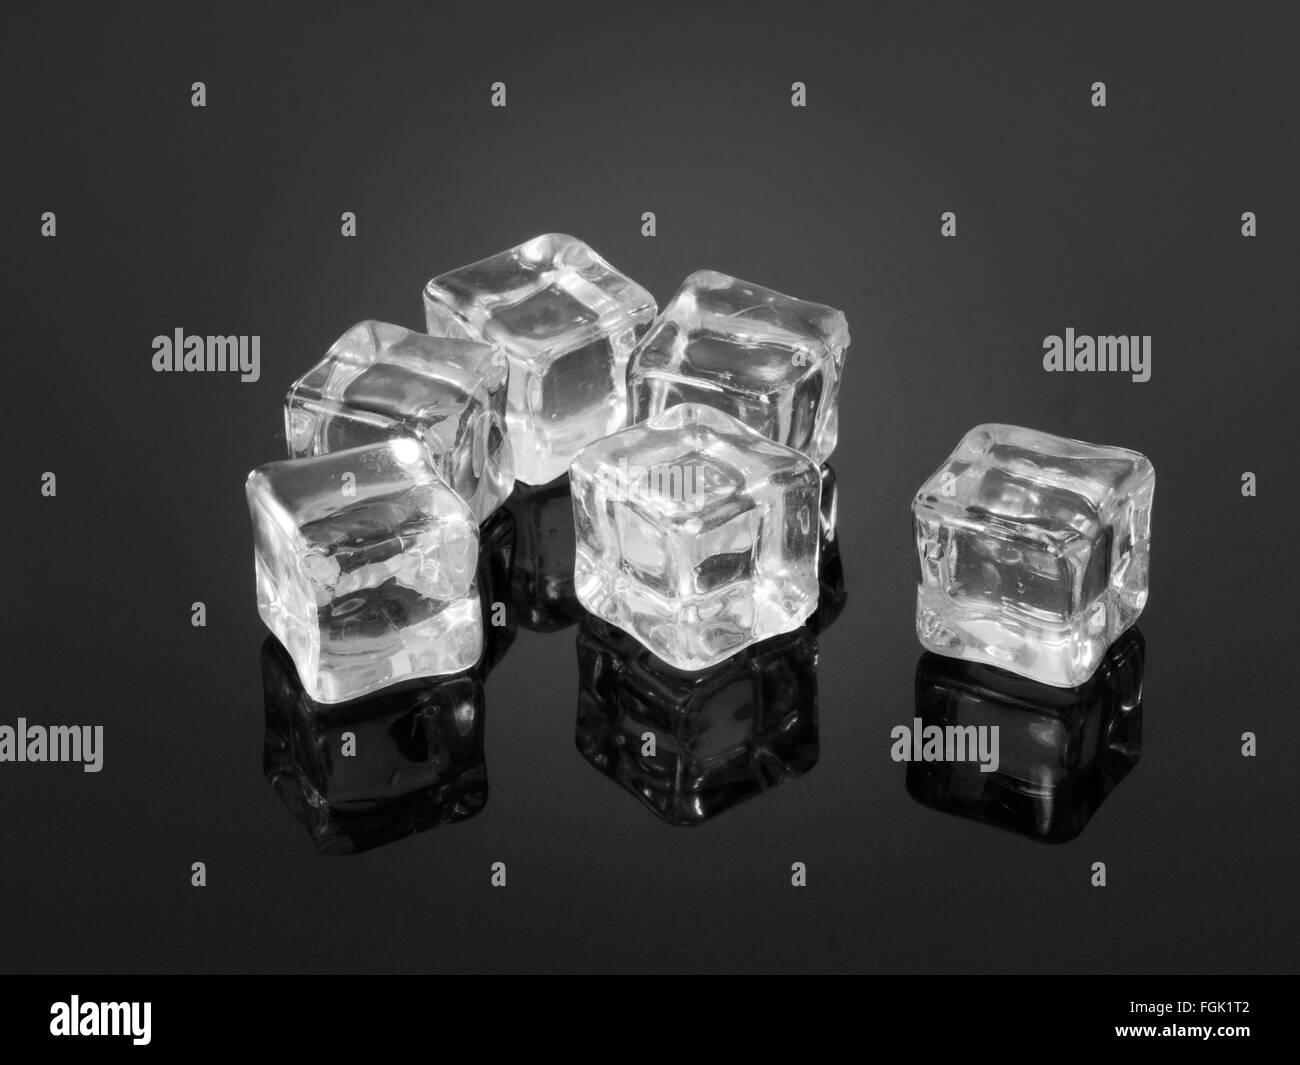 Des cubes de glace en plastique reflétée sur la surface texturée Banque D'Images